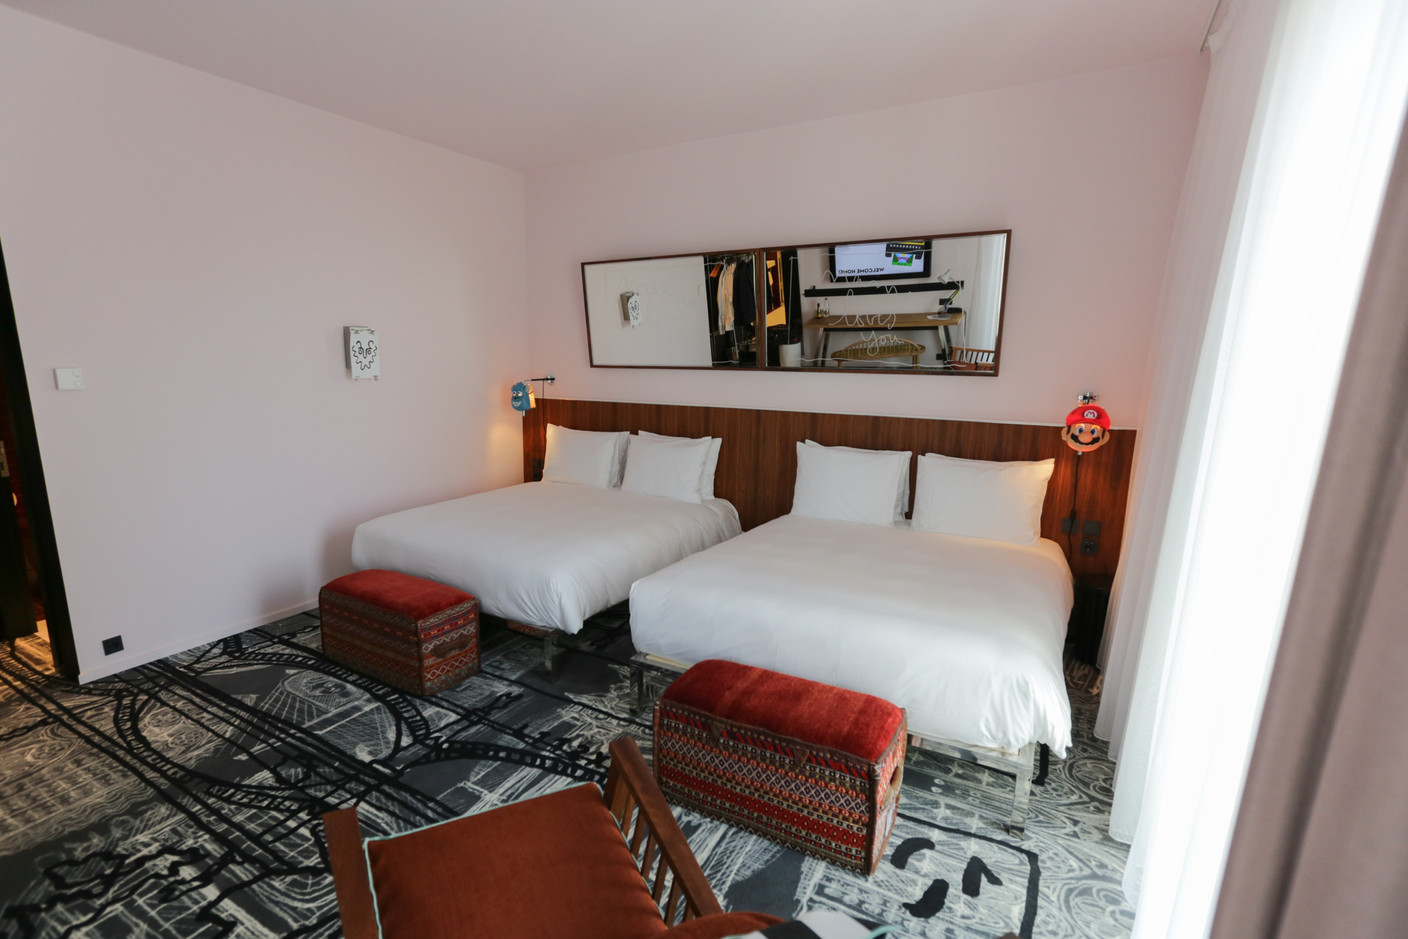 Les chambres sont toutes aménagées de manière similaire, et profitent de lits confortables. (Photo: Romain Gamba / Maison Moderne)